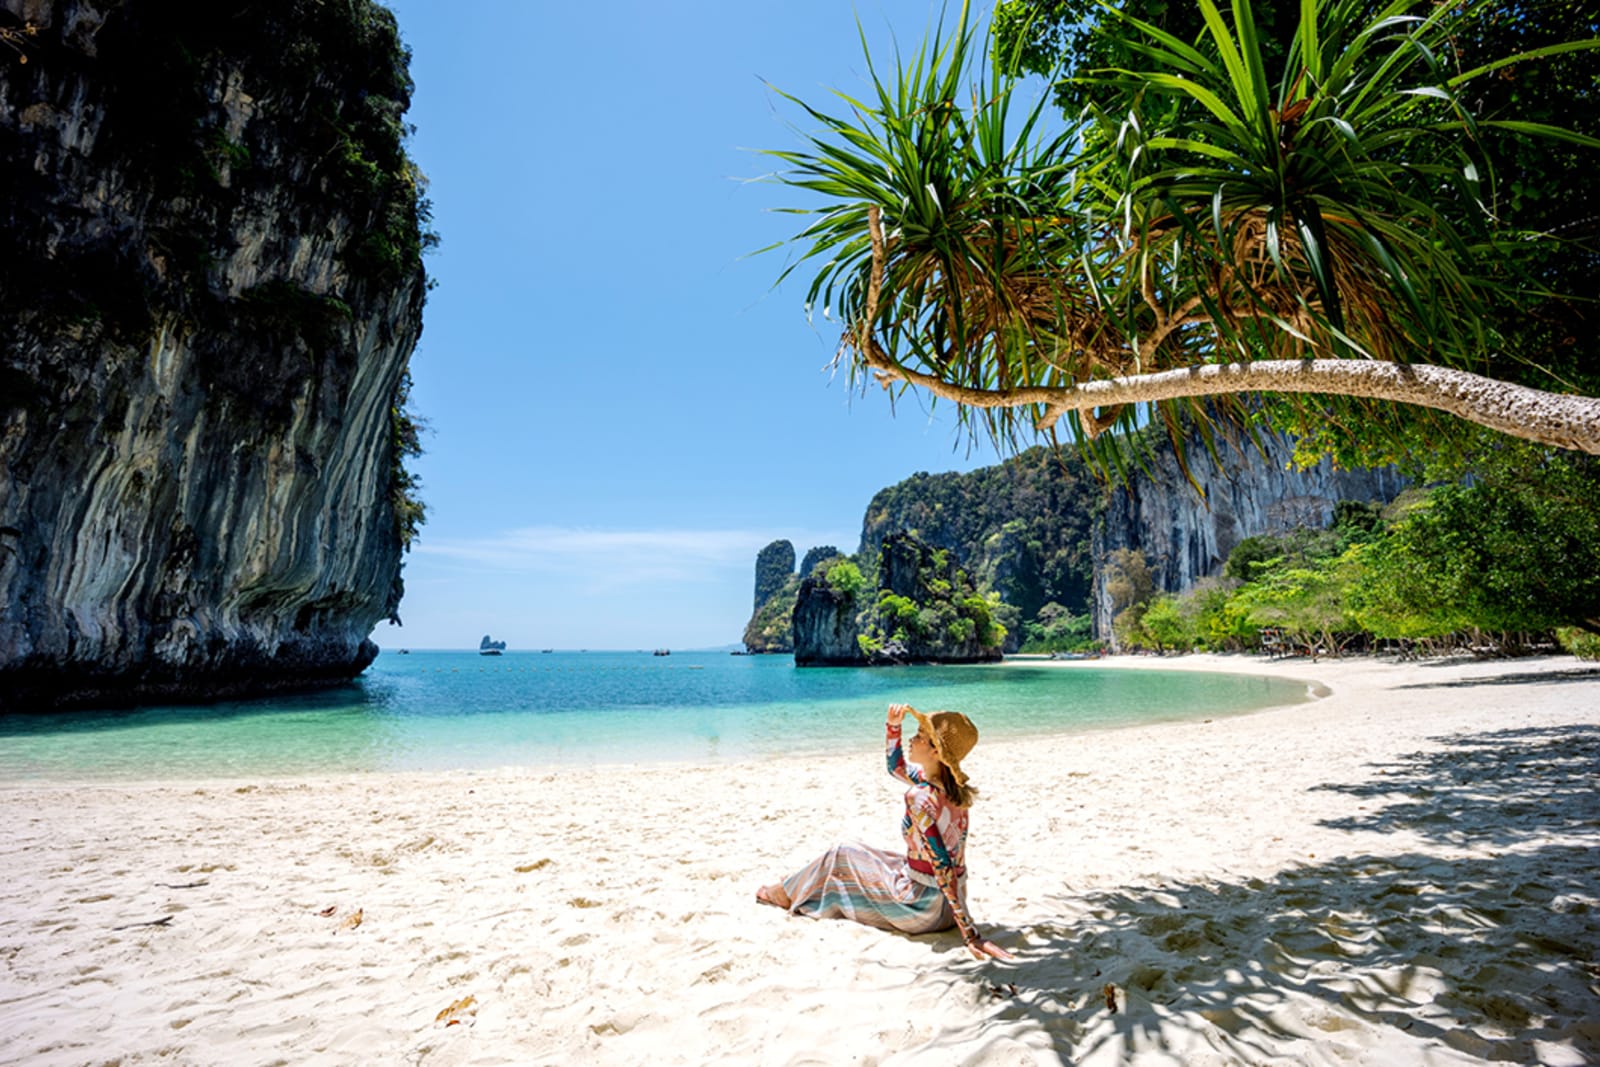 A woman on a beach in Thailand